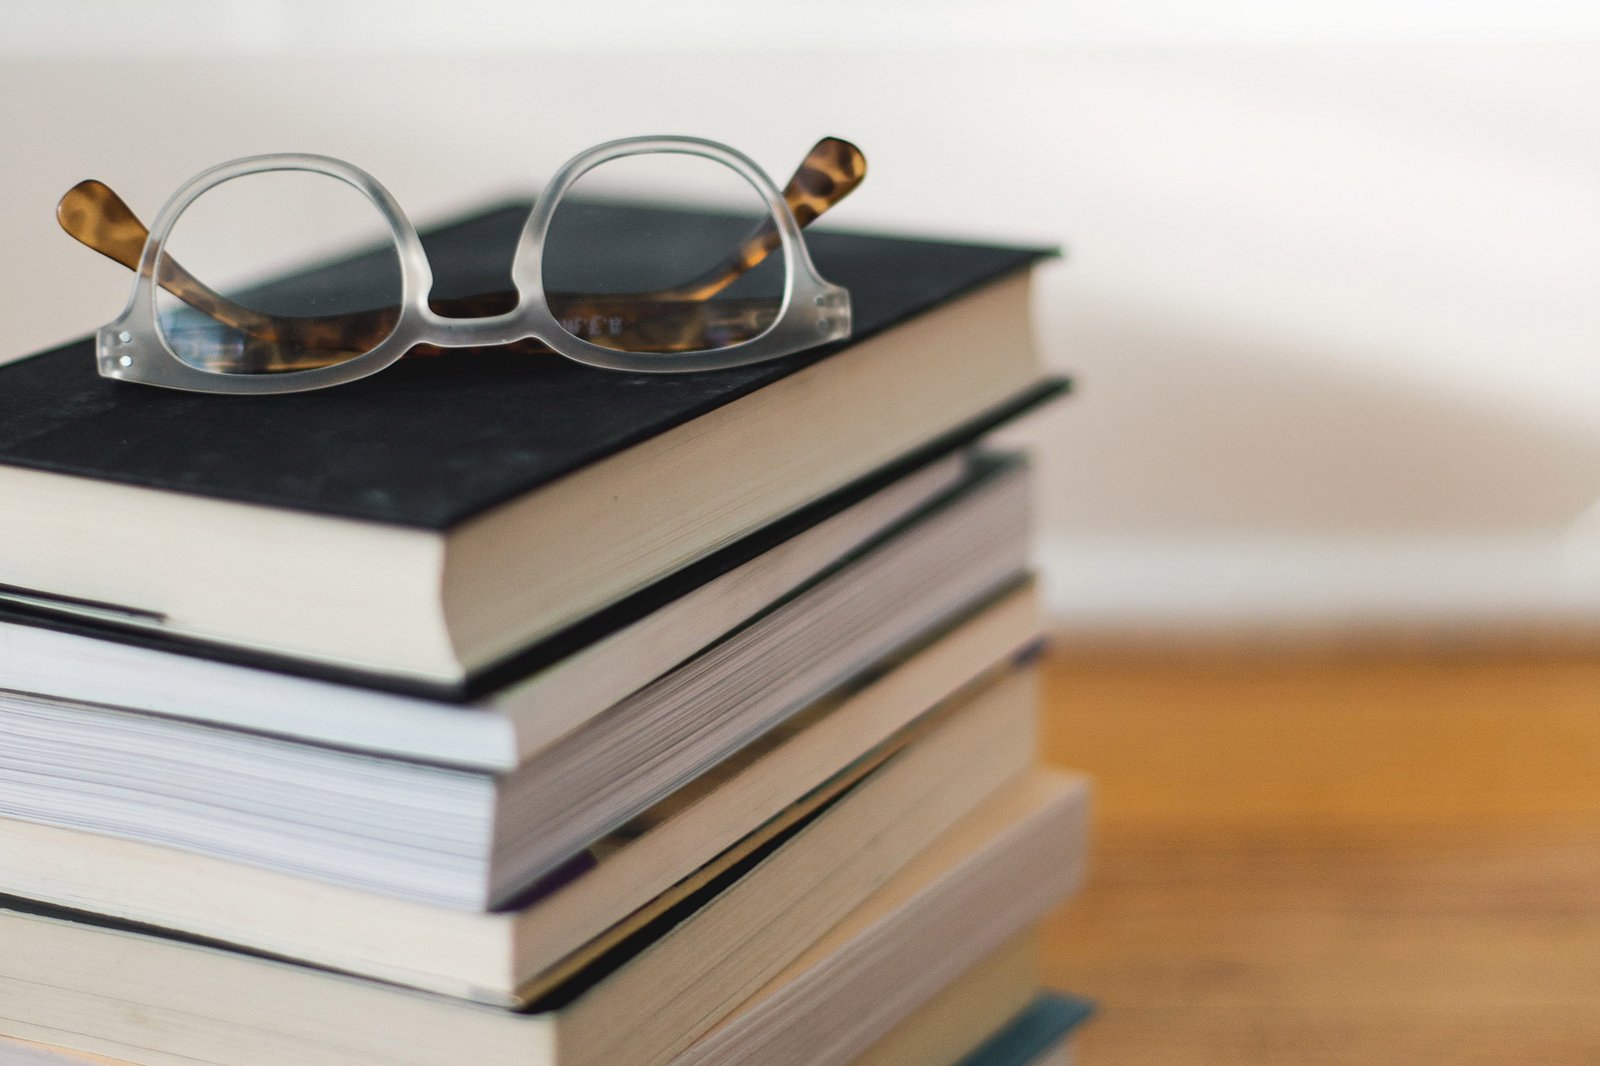 Un paio di occhiali posato su una pila di libri.